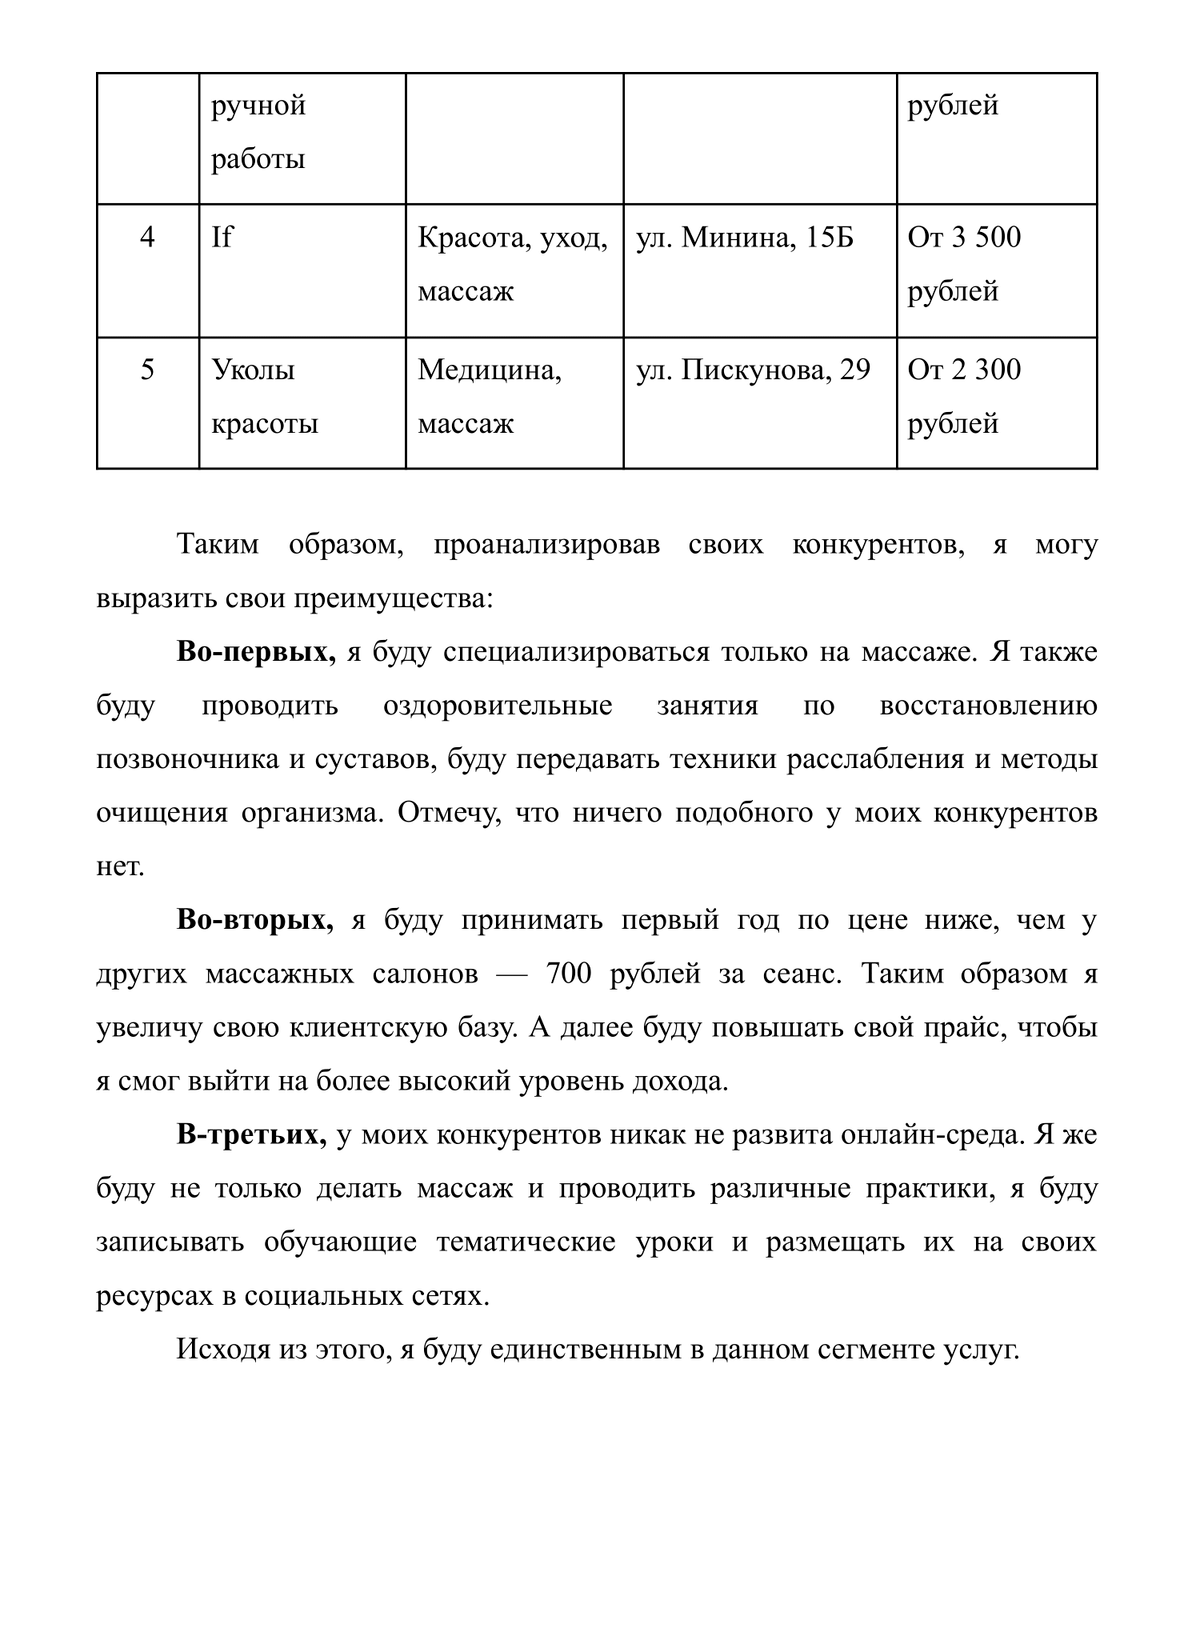 Денежные выплаты на основании социального контракта кемеровская область